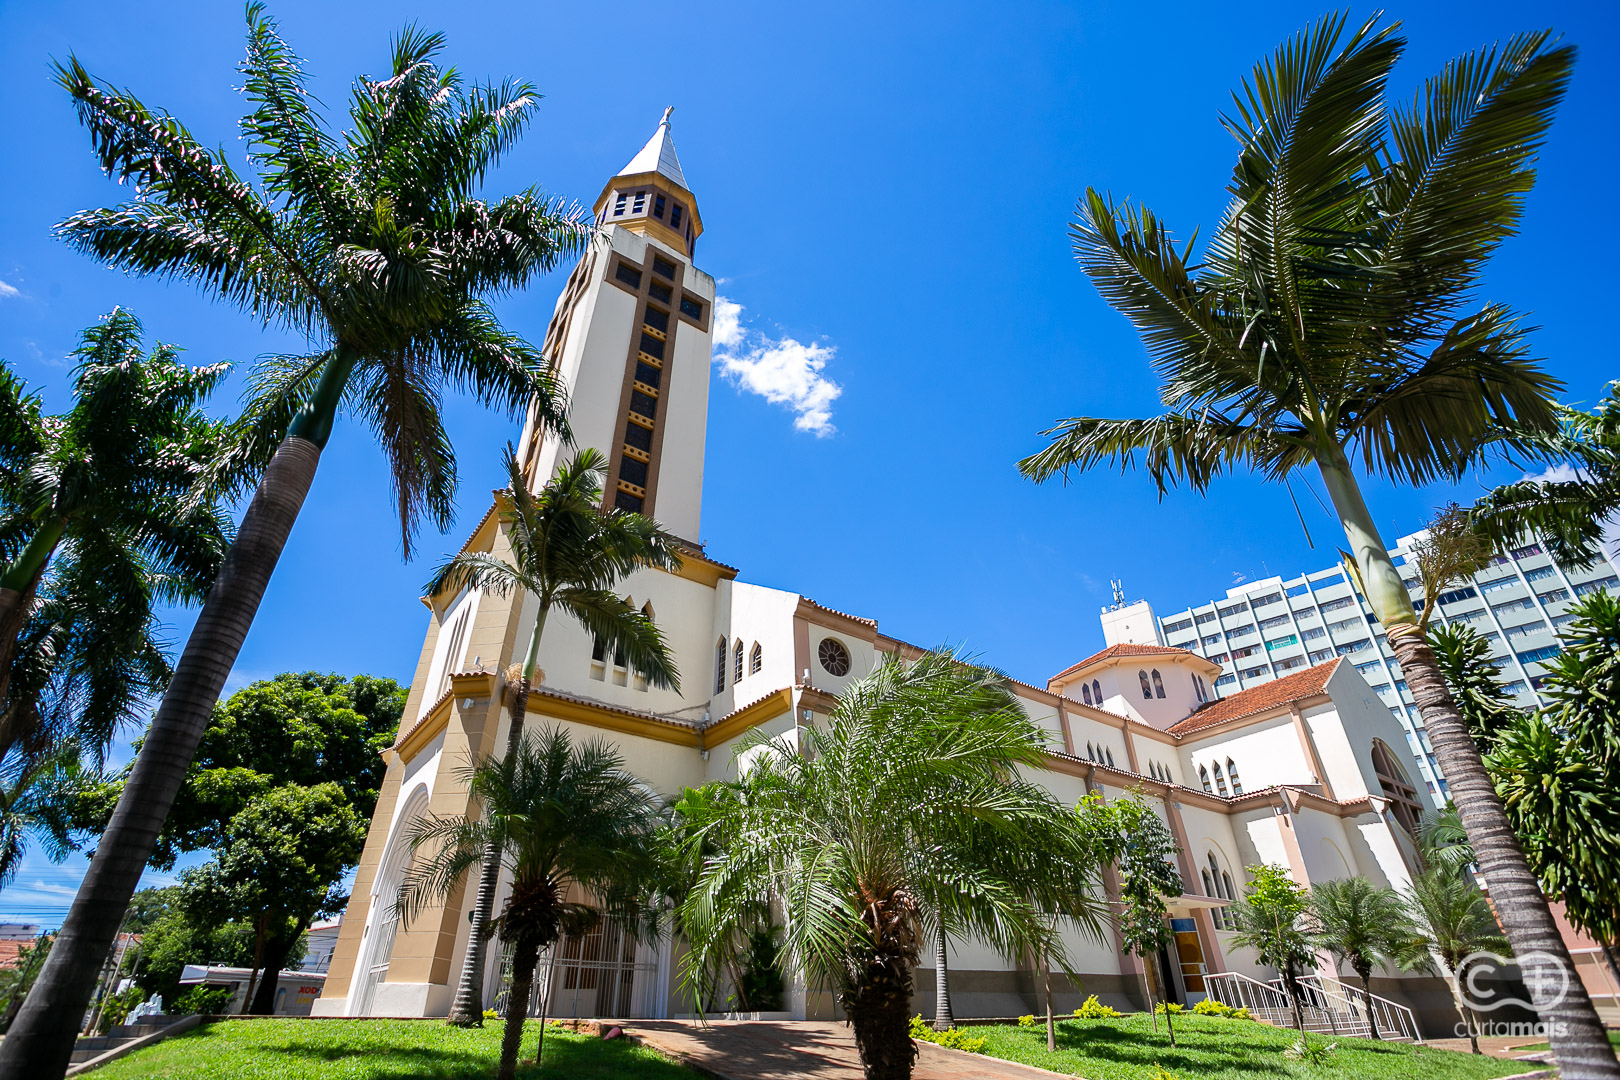 Conheça por dentro a Catedral Metropolitana de Goiânia, uma verdadeira obra  de arte da arquitetura eclética em Goiás - Curta Mais